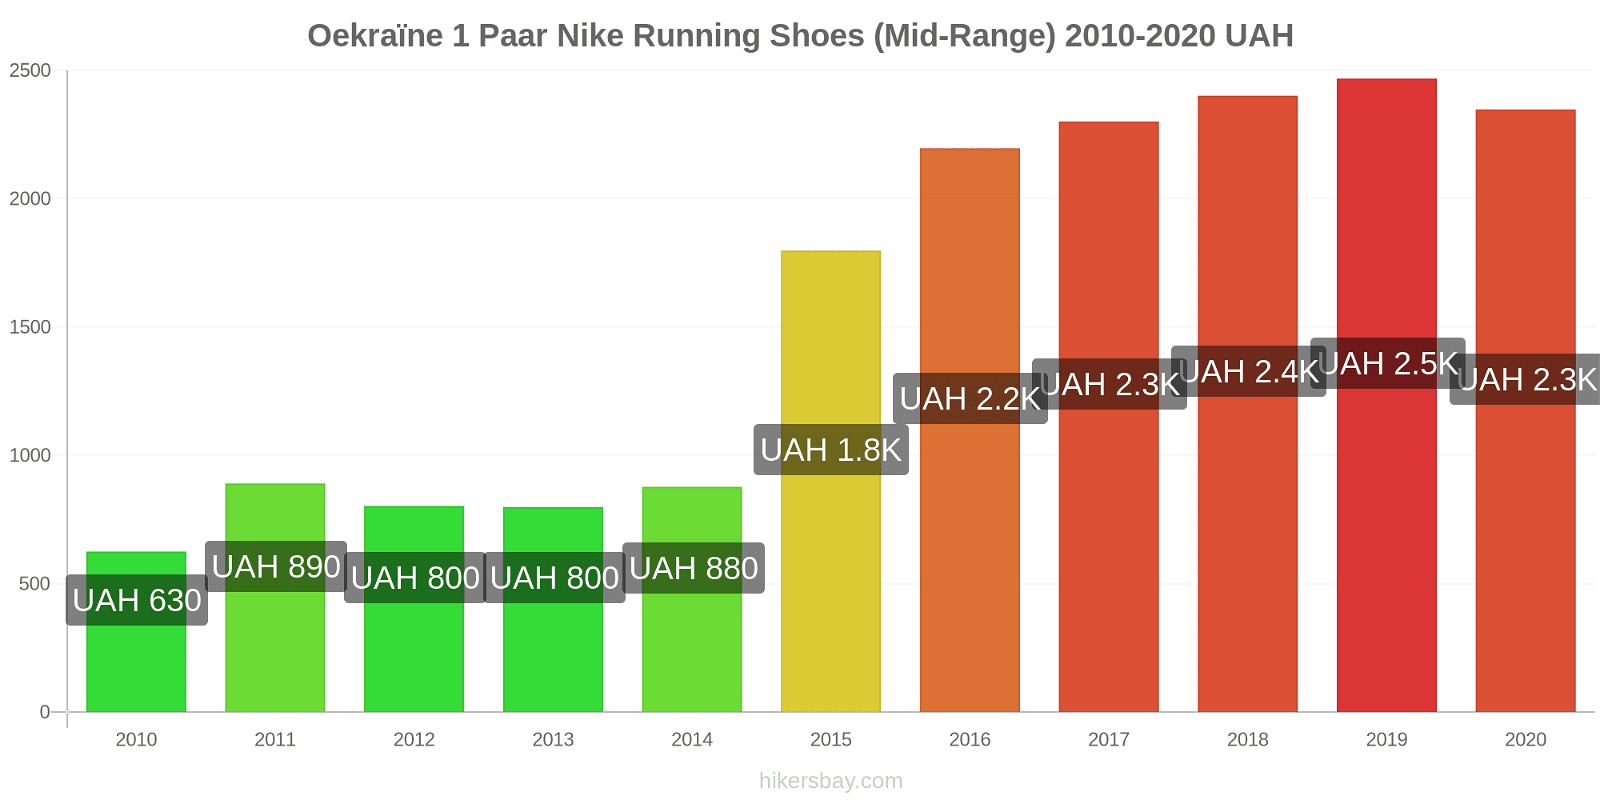 Oekraïne prijswijzigingen 1 paar Nike hardloopschoenen (uit de middenklasse) hikersbay.com